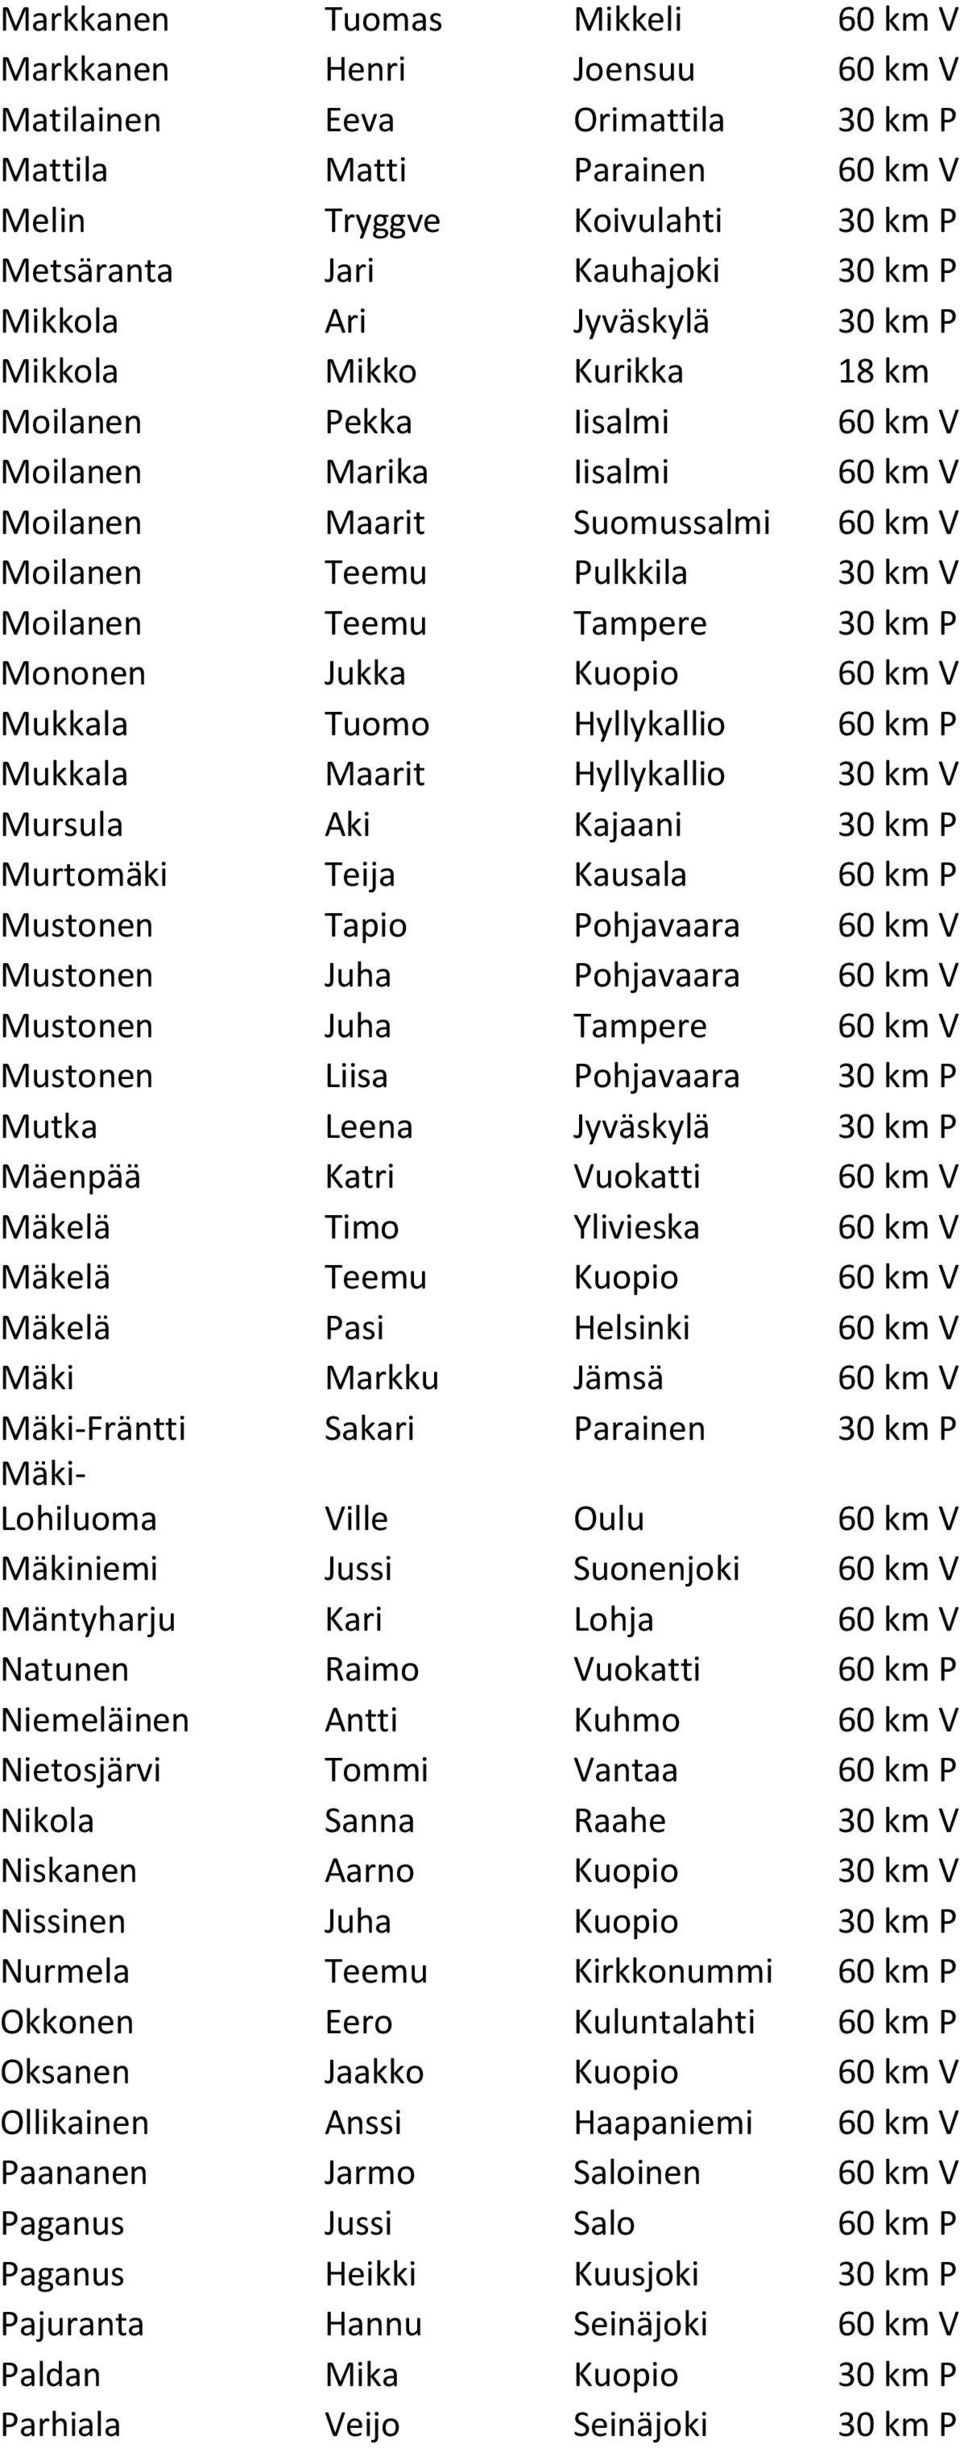 Teemu Tampere 30 km P Mononen Jukka Kuopio 60 km V Mukkala Tuomo Hyllykallio 60 km P Mukkala Maarit Hyllykallio 30 km V Mursula Aki Kajaani 30 km P Murtomäki Teija Kausala 60 km P Mustonen Tapio